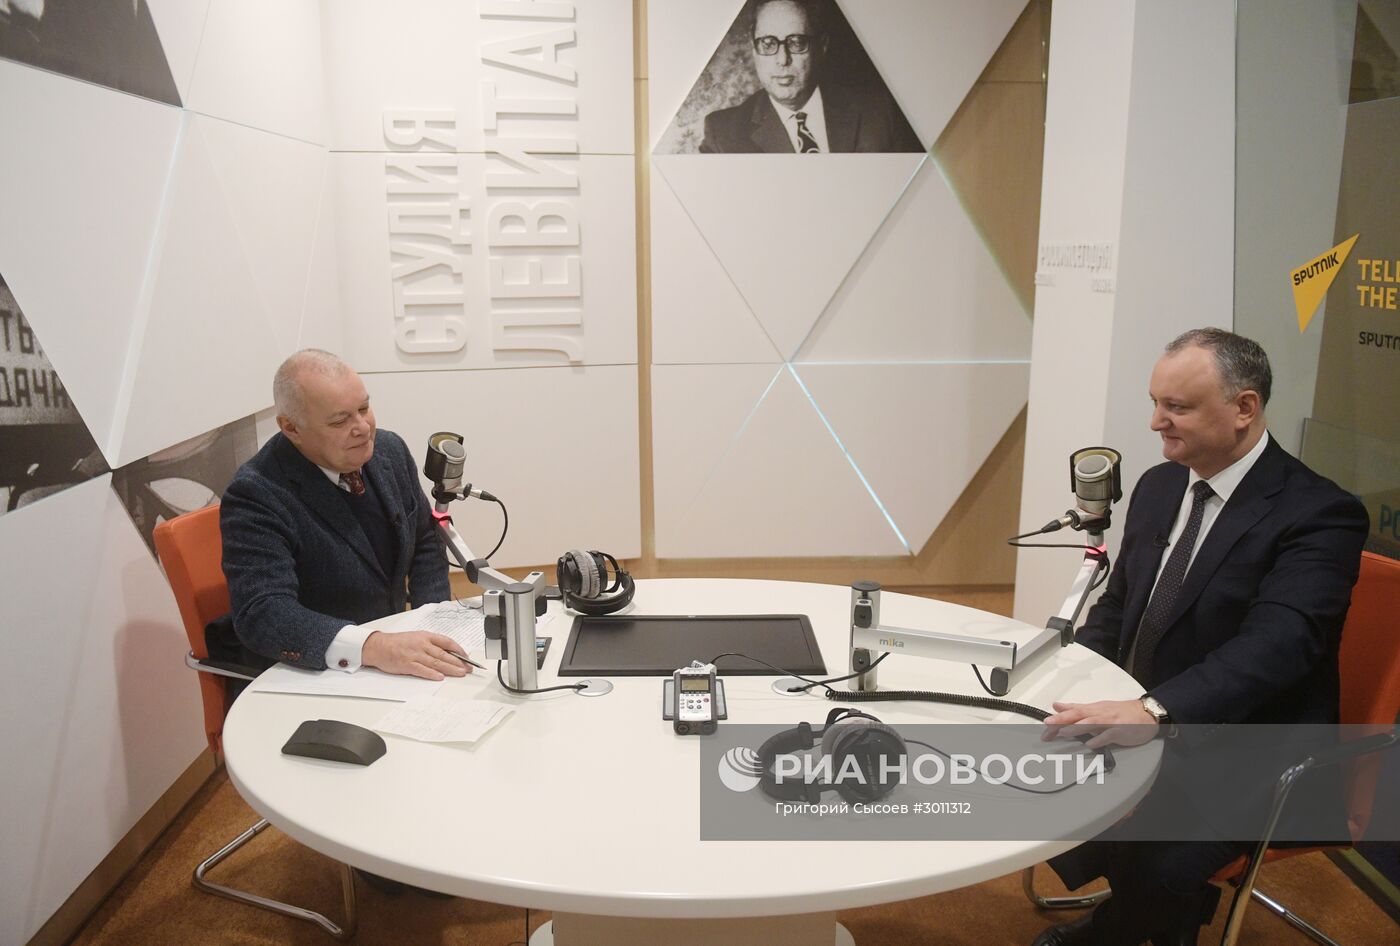 Президент Молдавии И. Додон дал интервью гендиректору МИА "Россия сегодня" Д. Киселеву